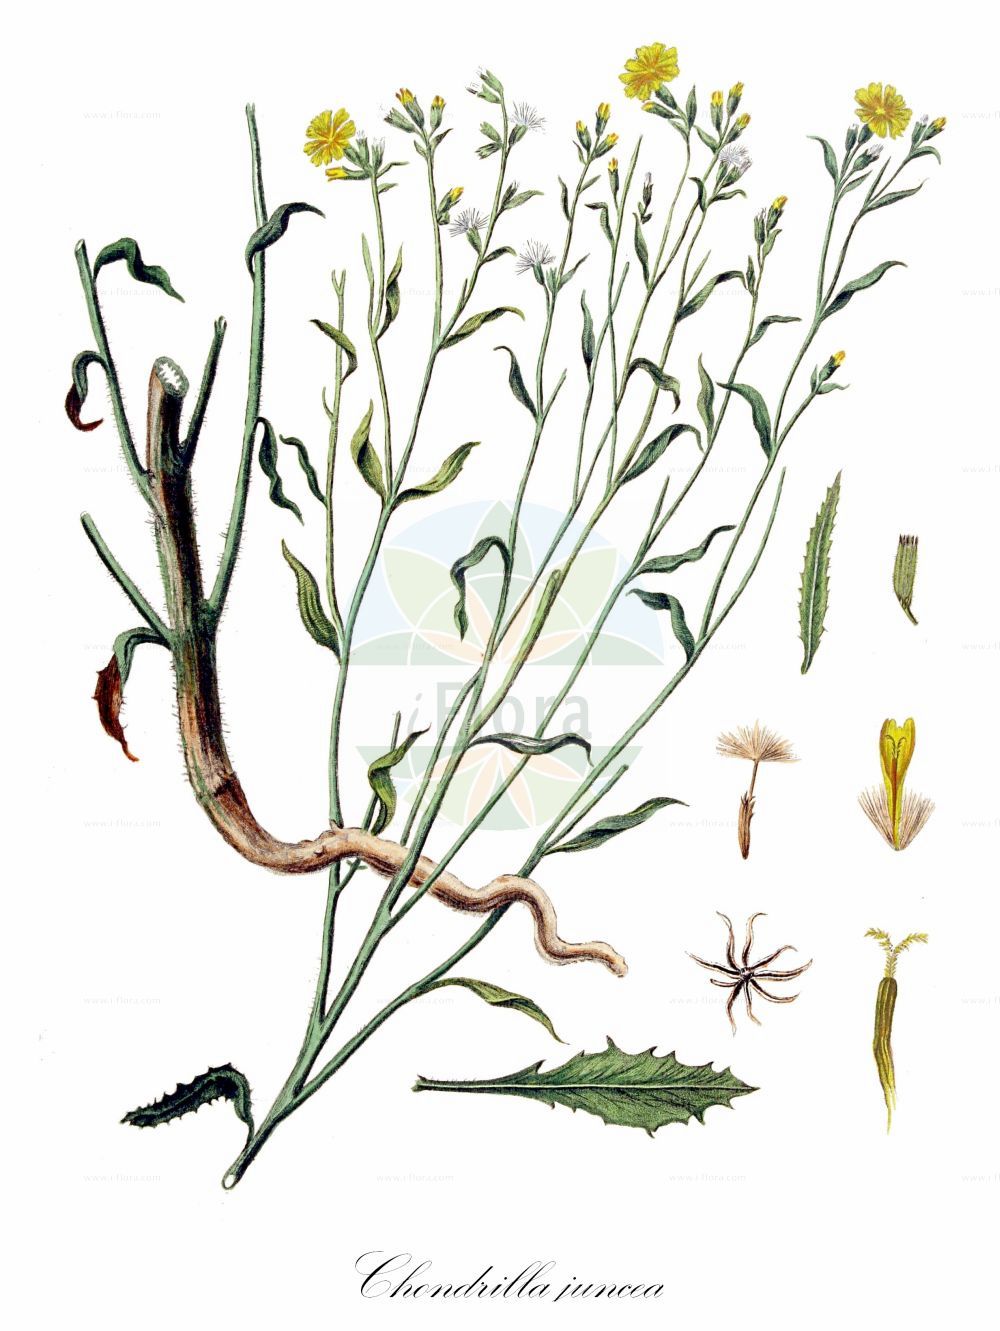 Historische Abbildung von Chondrilla juncea (Großer Knorpellattich - Skeletonweed). Das Bild zeigt Blatt, Bluete, Frucht und Same. ---- Historical Drawing of Chondrilla juncea (Großer Knorpellattich - Skeletonweed). The image is showing leaf, flower, fruit and seed.(Chondrilla juncea,Großer Knorpellattich,Skeletonweed,Chondrilla acanthophylla,Chondrilla juncea,Chondrilla vallisoletana,Grosser Knorpellattich,Ruten-Knorpellattich,Skeletonweed,Devil's Grass,Gum Succory,Nakedweed,Rush Skeletonweed,Chondrilla,Knorpellattich,Chondrilla,Asteraceae,Korbblütengewächse,Daisy family,Blatt,Bluete,Frucht,Same,leaf,flower,fruit,seed,Kops (1800-1934))